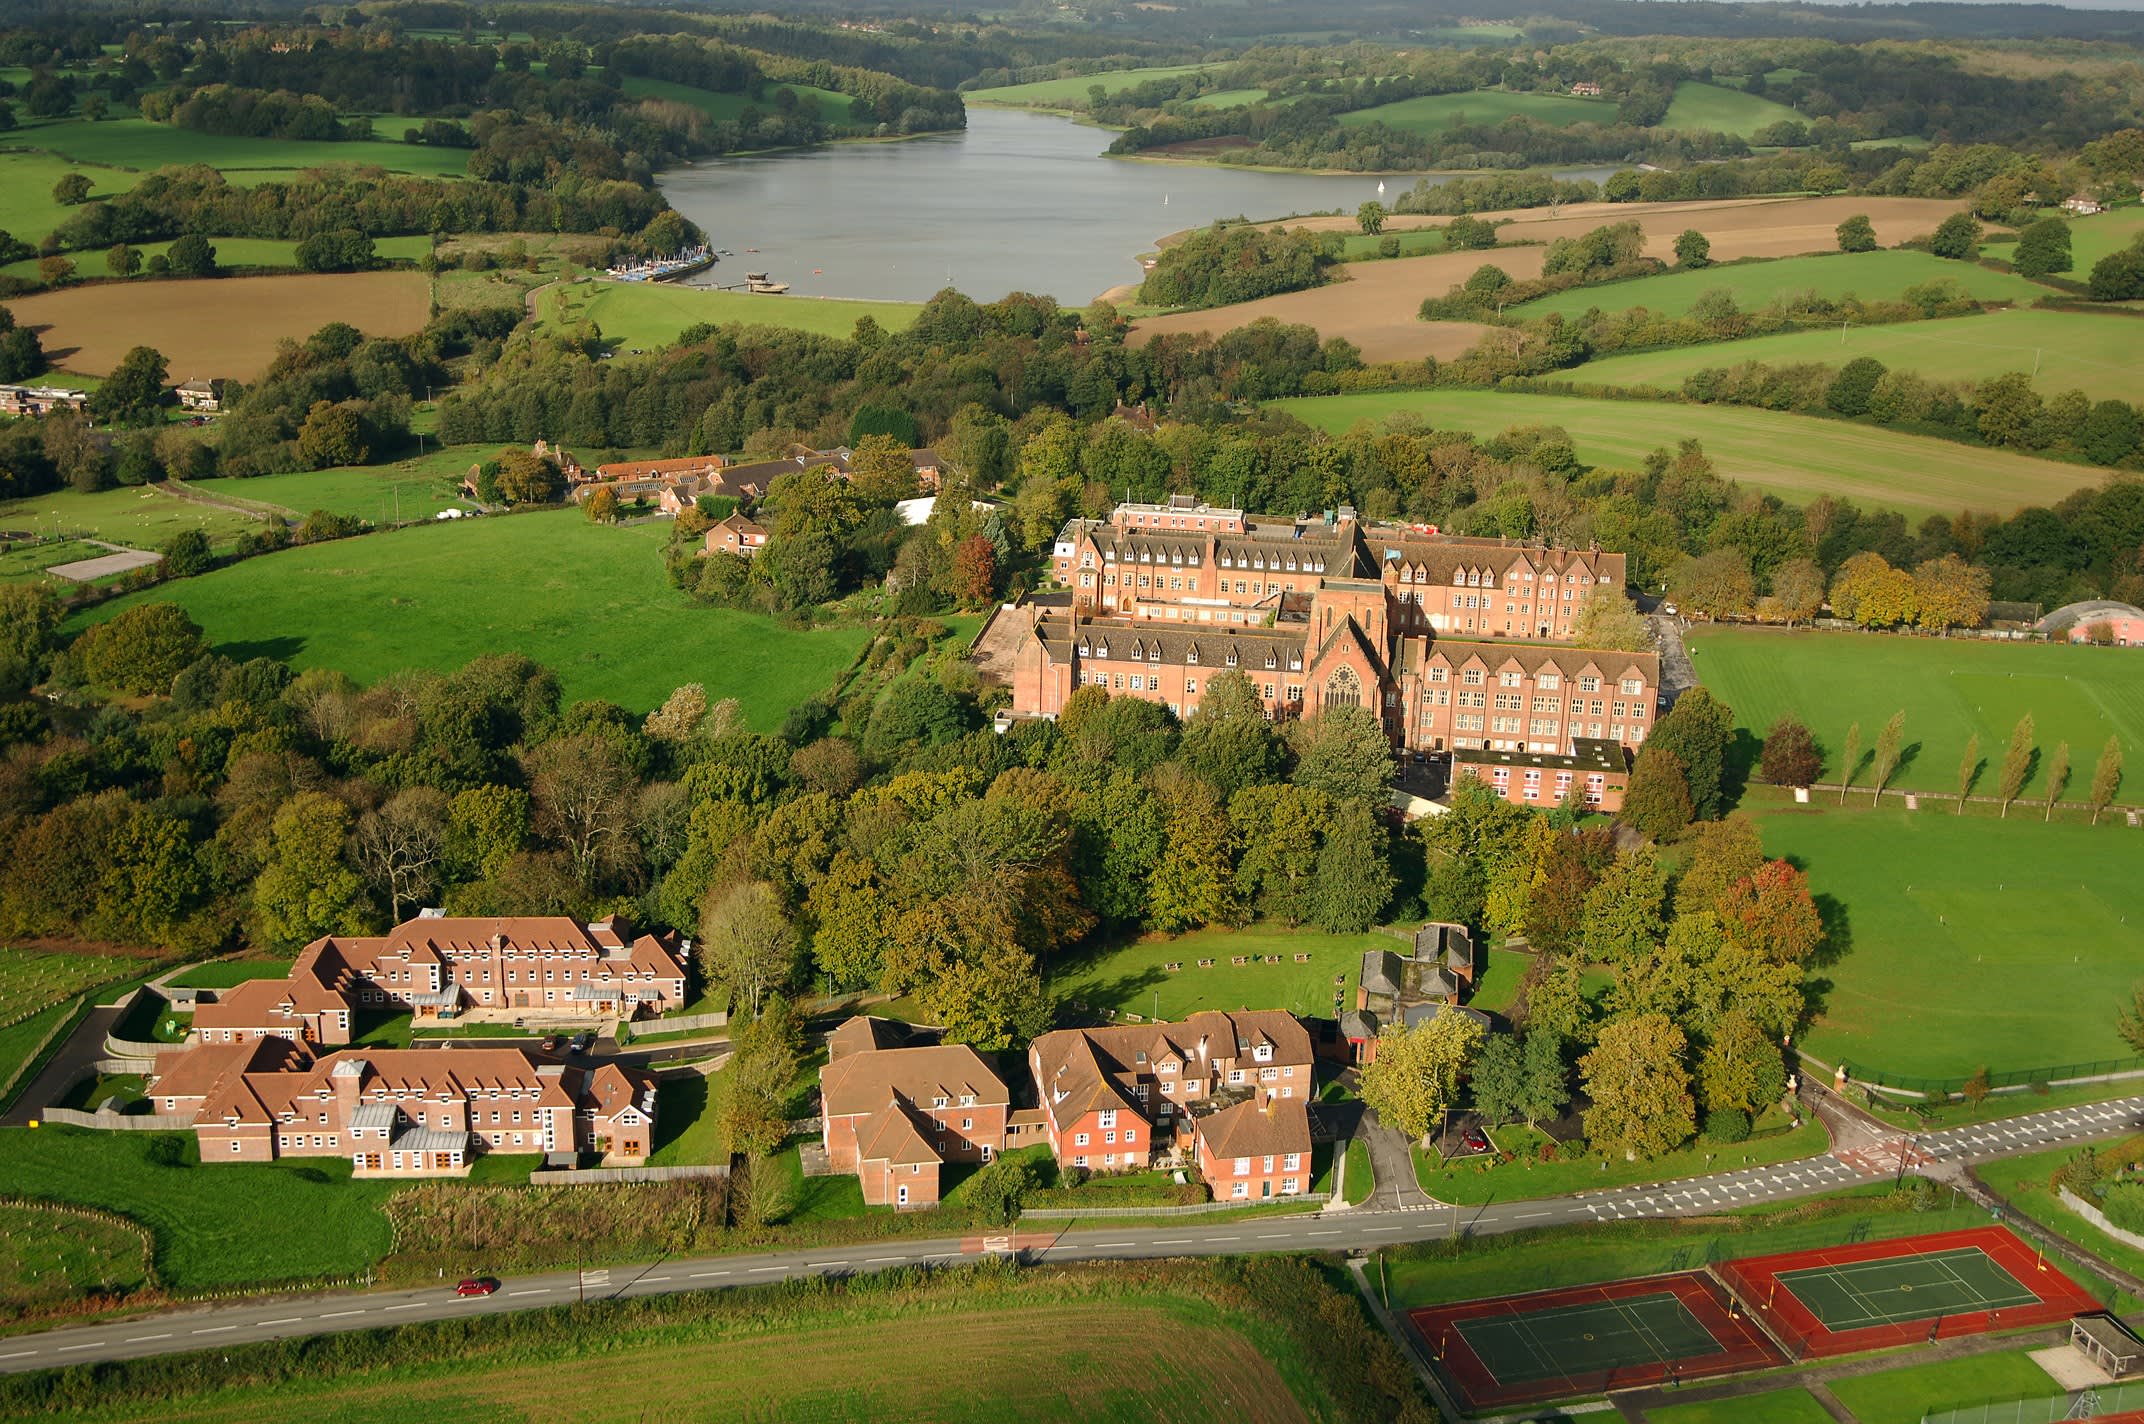 Ardingly College liegt auf einem wunderschönen Campus bei einem See.